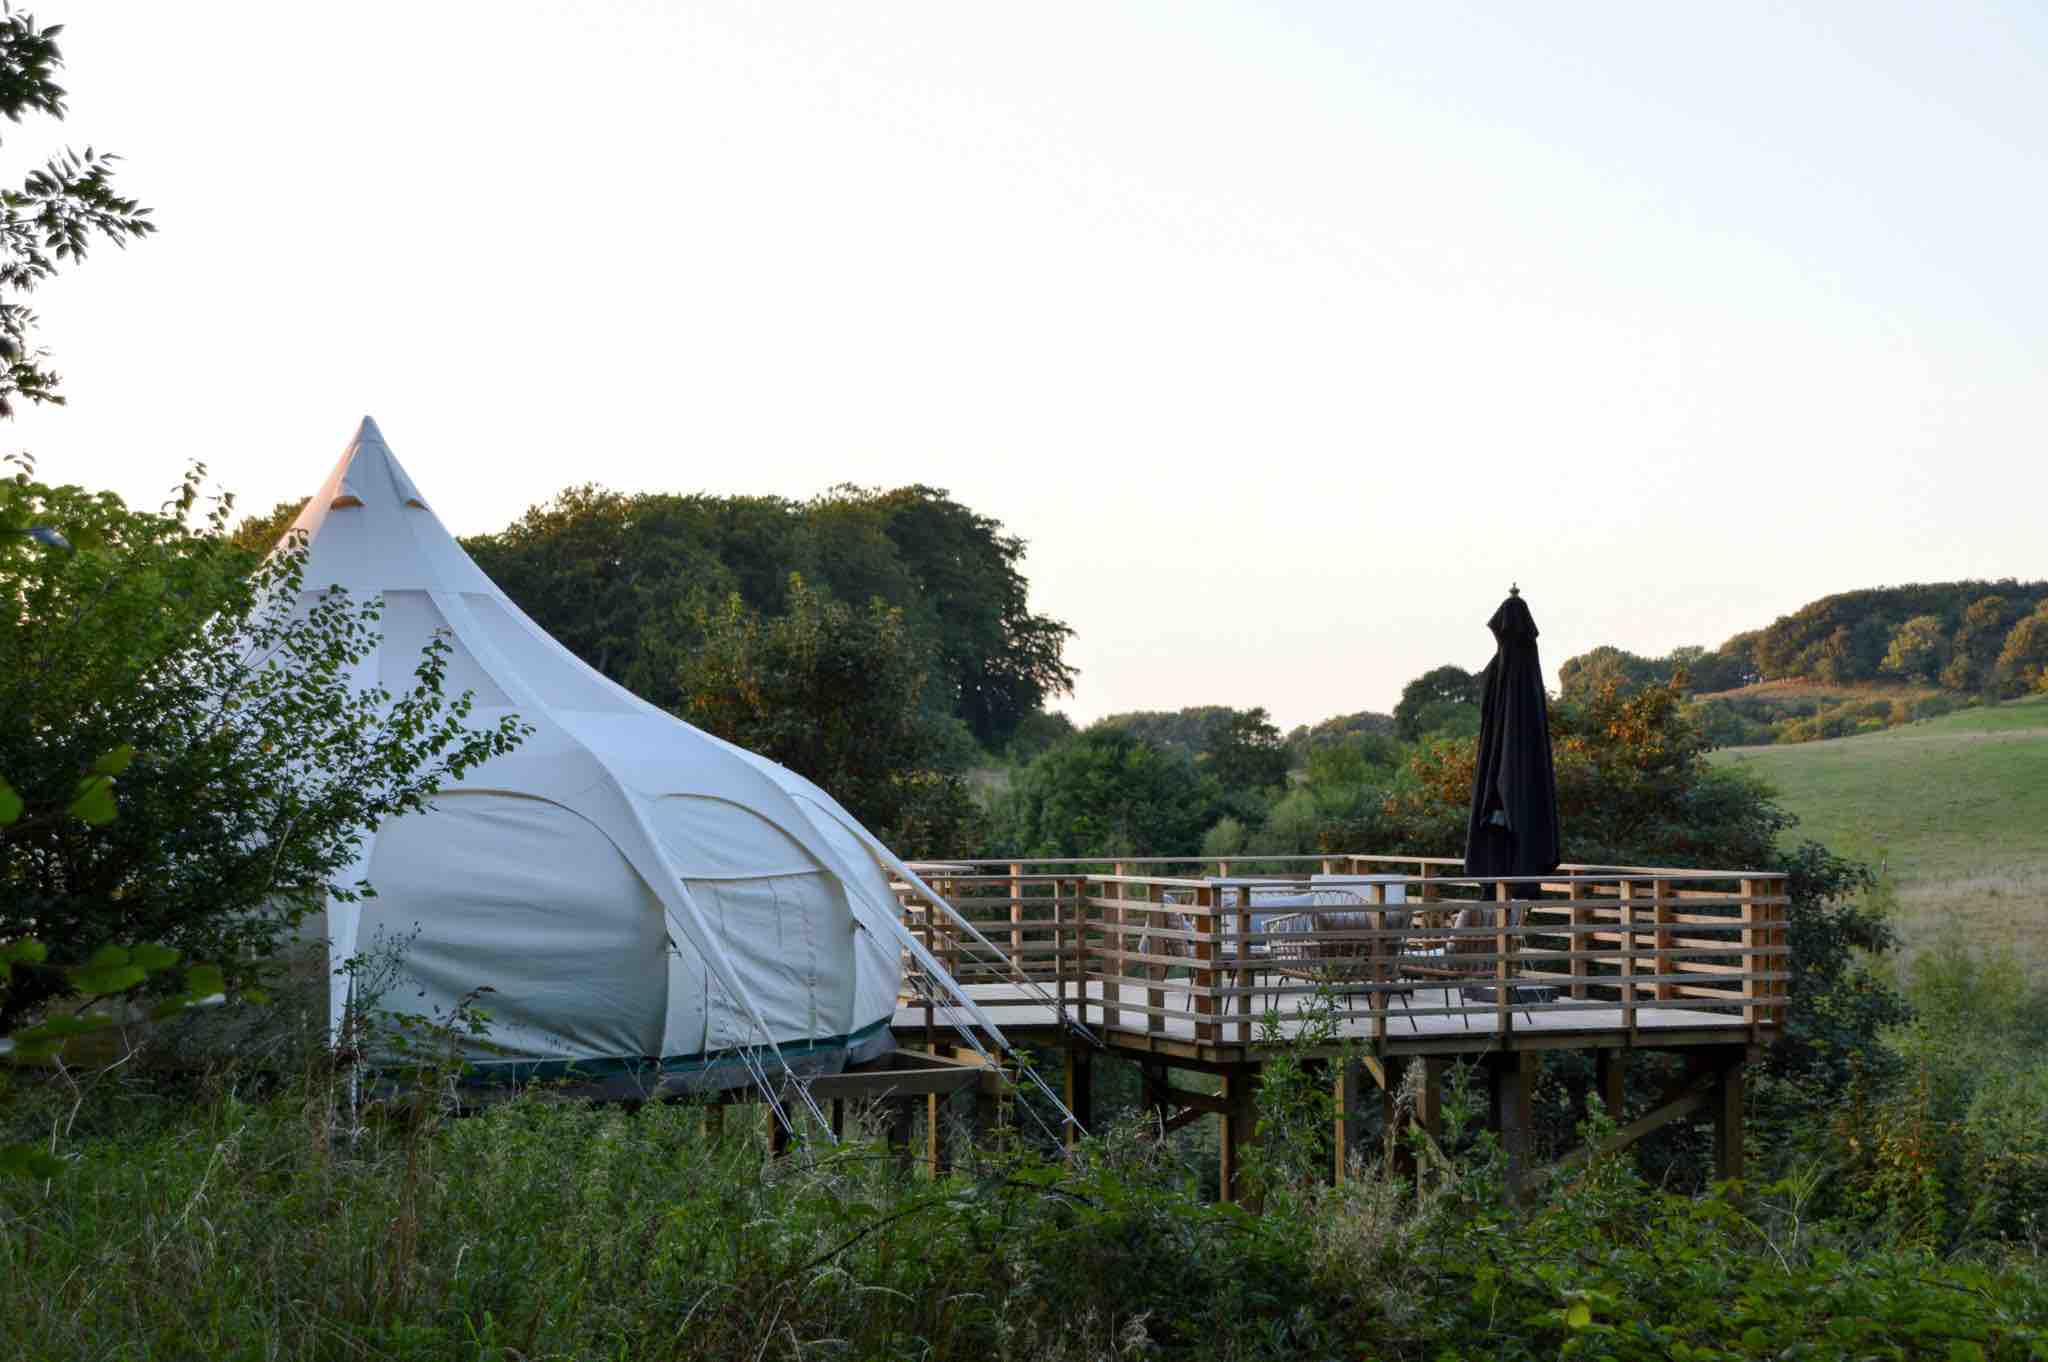 Lagring fire gås Danmarks bedste campingplads - Resort, klassisk og outdoor.